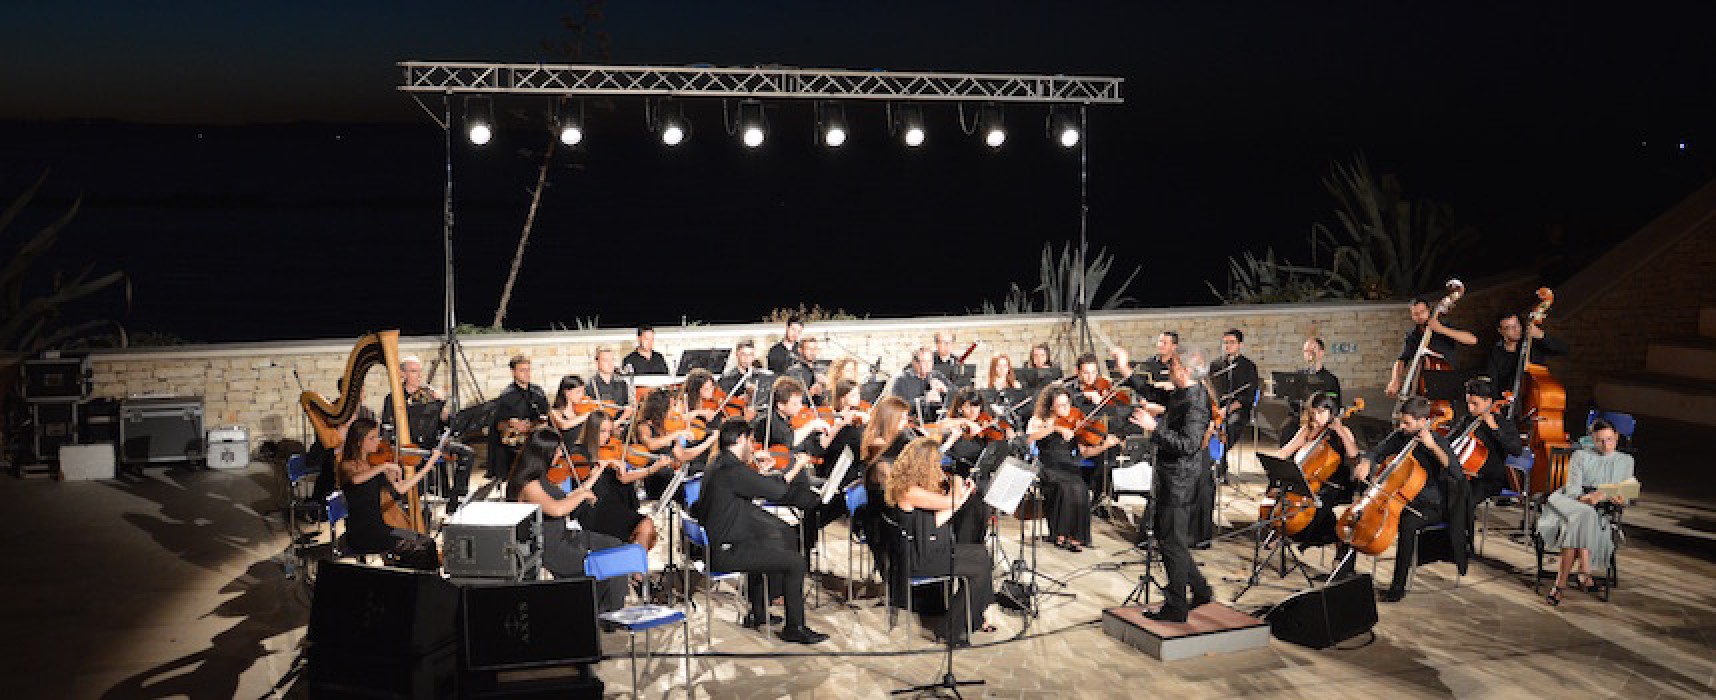 L’orchestra Filarmonica Pugliese a Bisceglie per il concerto “Sol dell’alba”